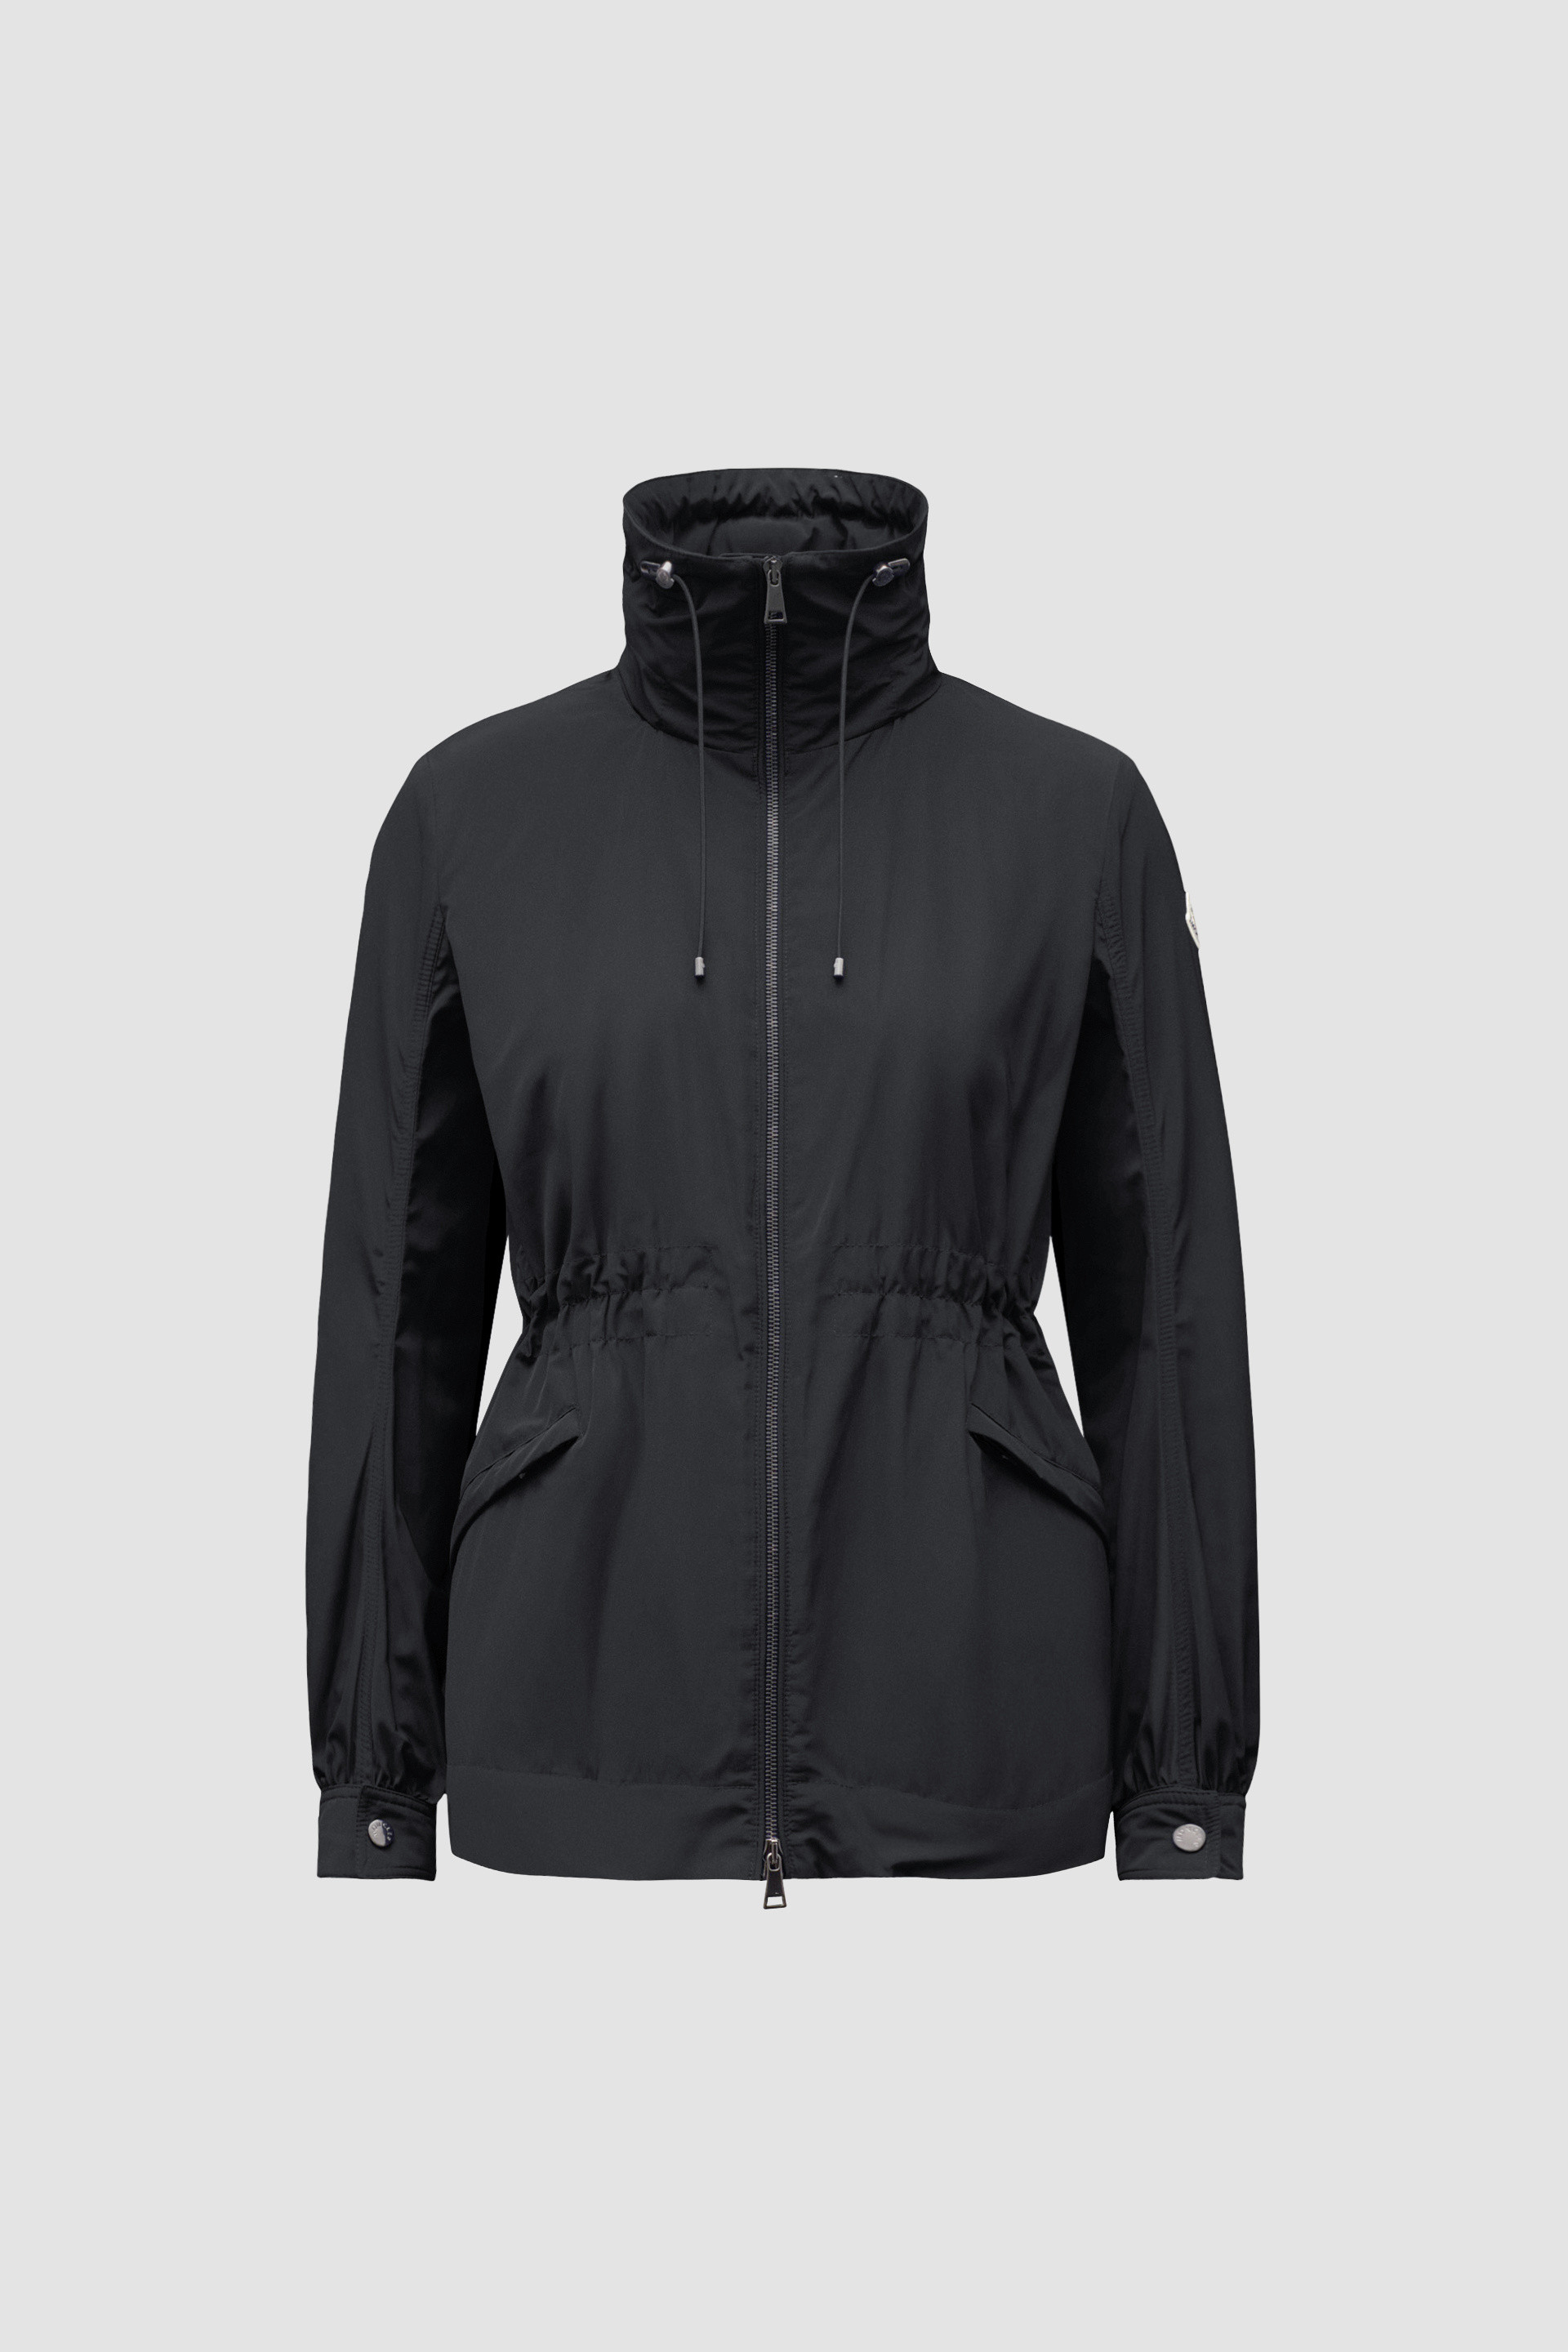 ブラック Enetジャケット : ウインドブレーカーとレインコート 向けの 